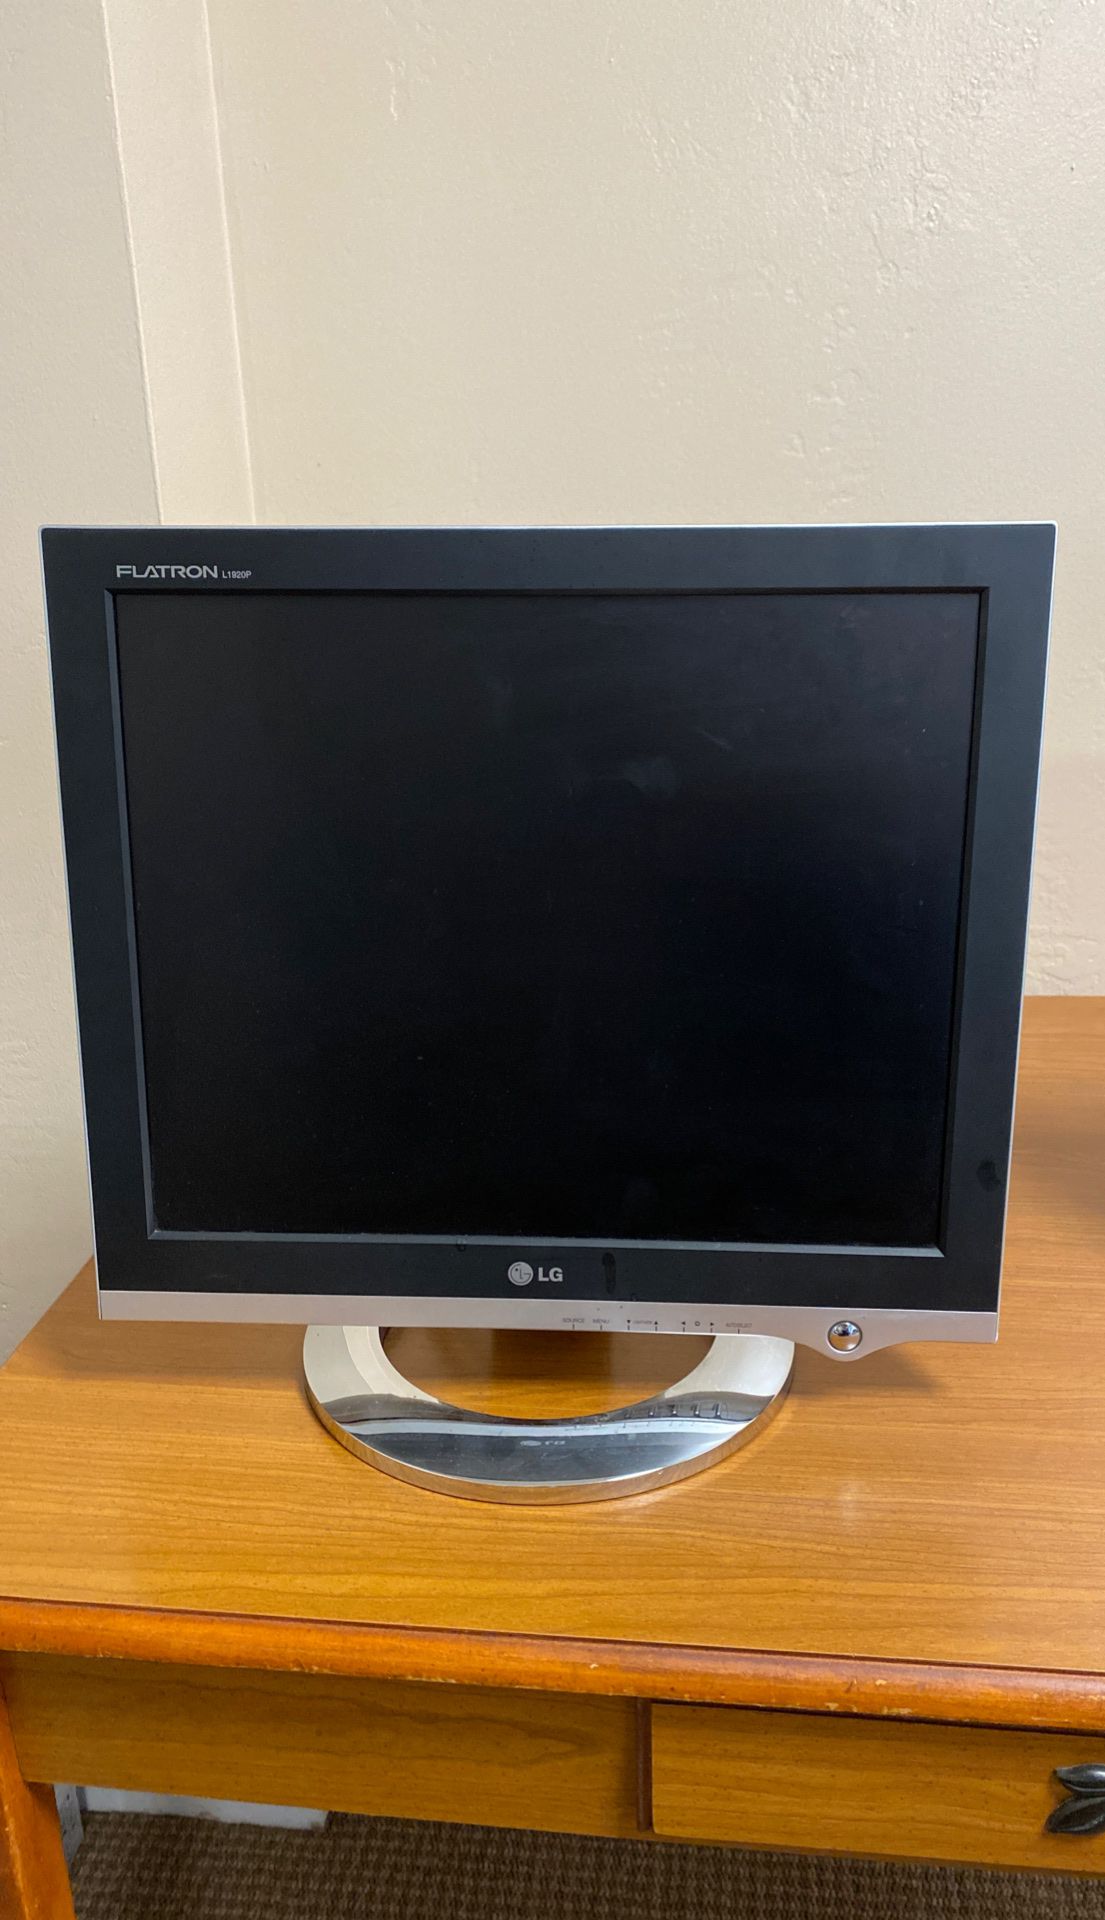 LG 20” Computer Monitor